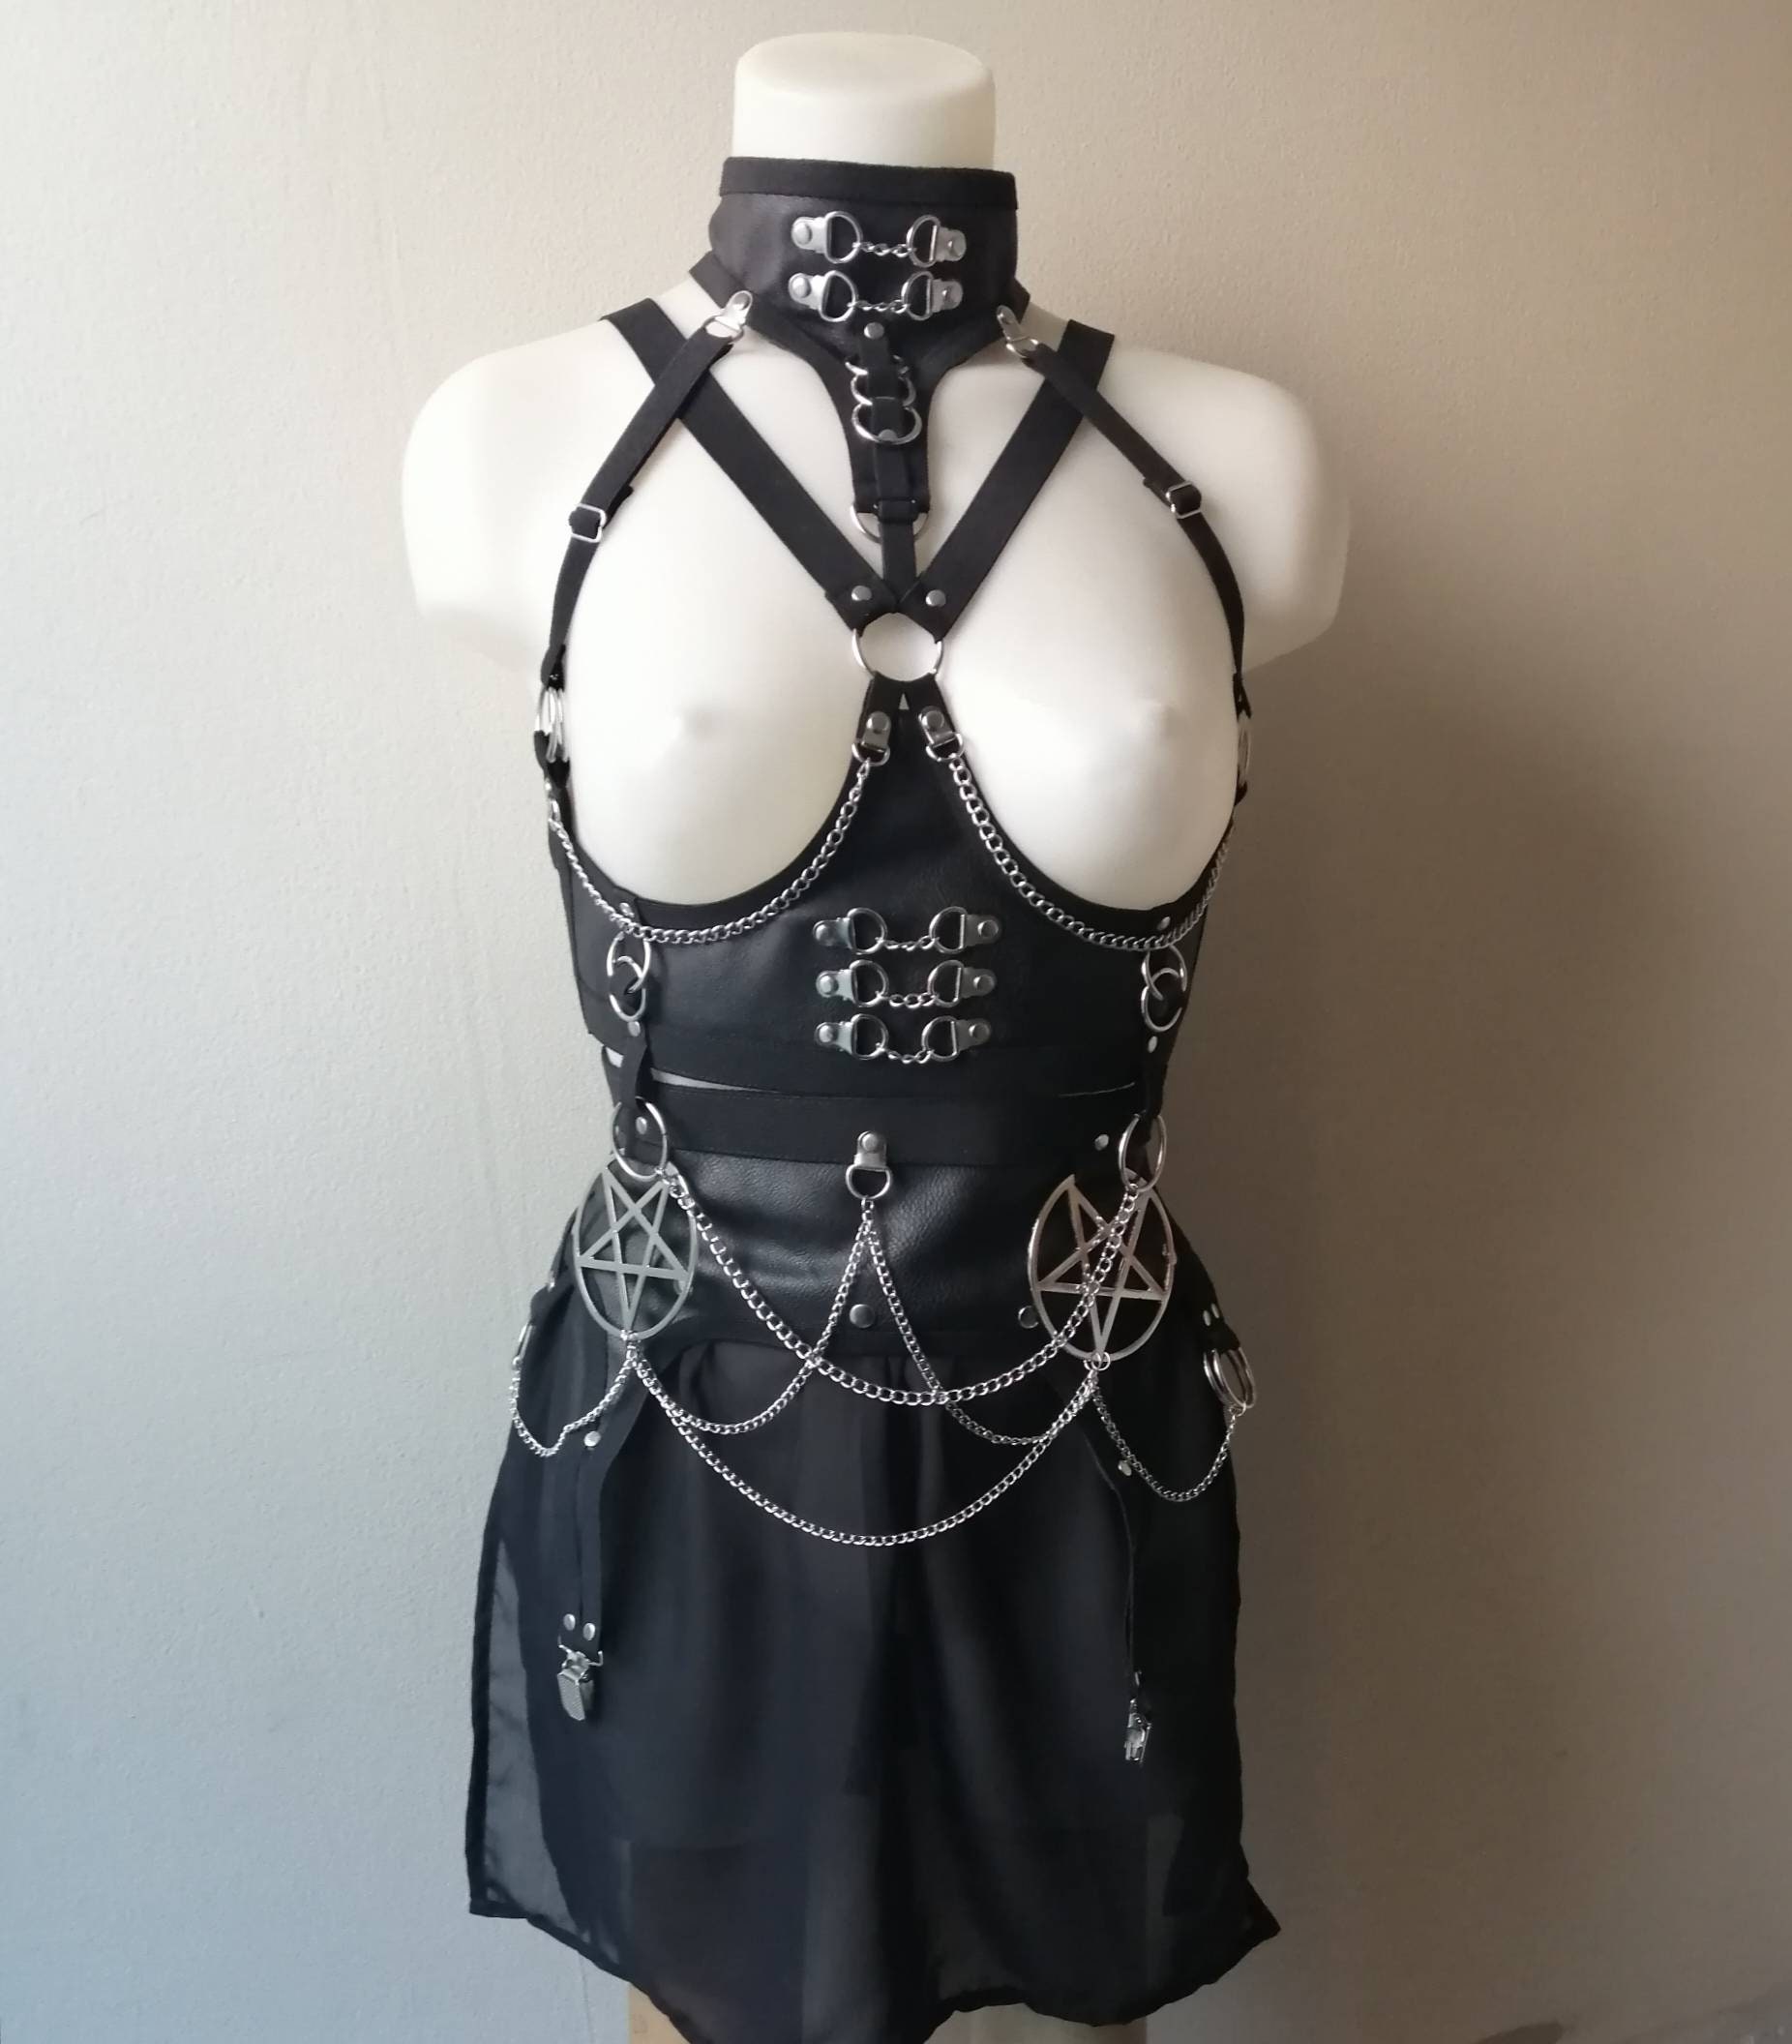 Underbust harness + pentagram mini skirt faux leather body belt corset pentagram pendant garter belt photo